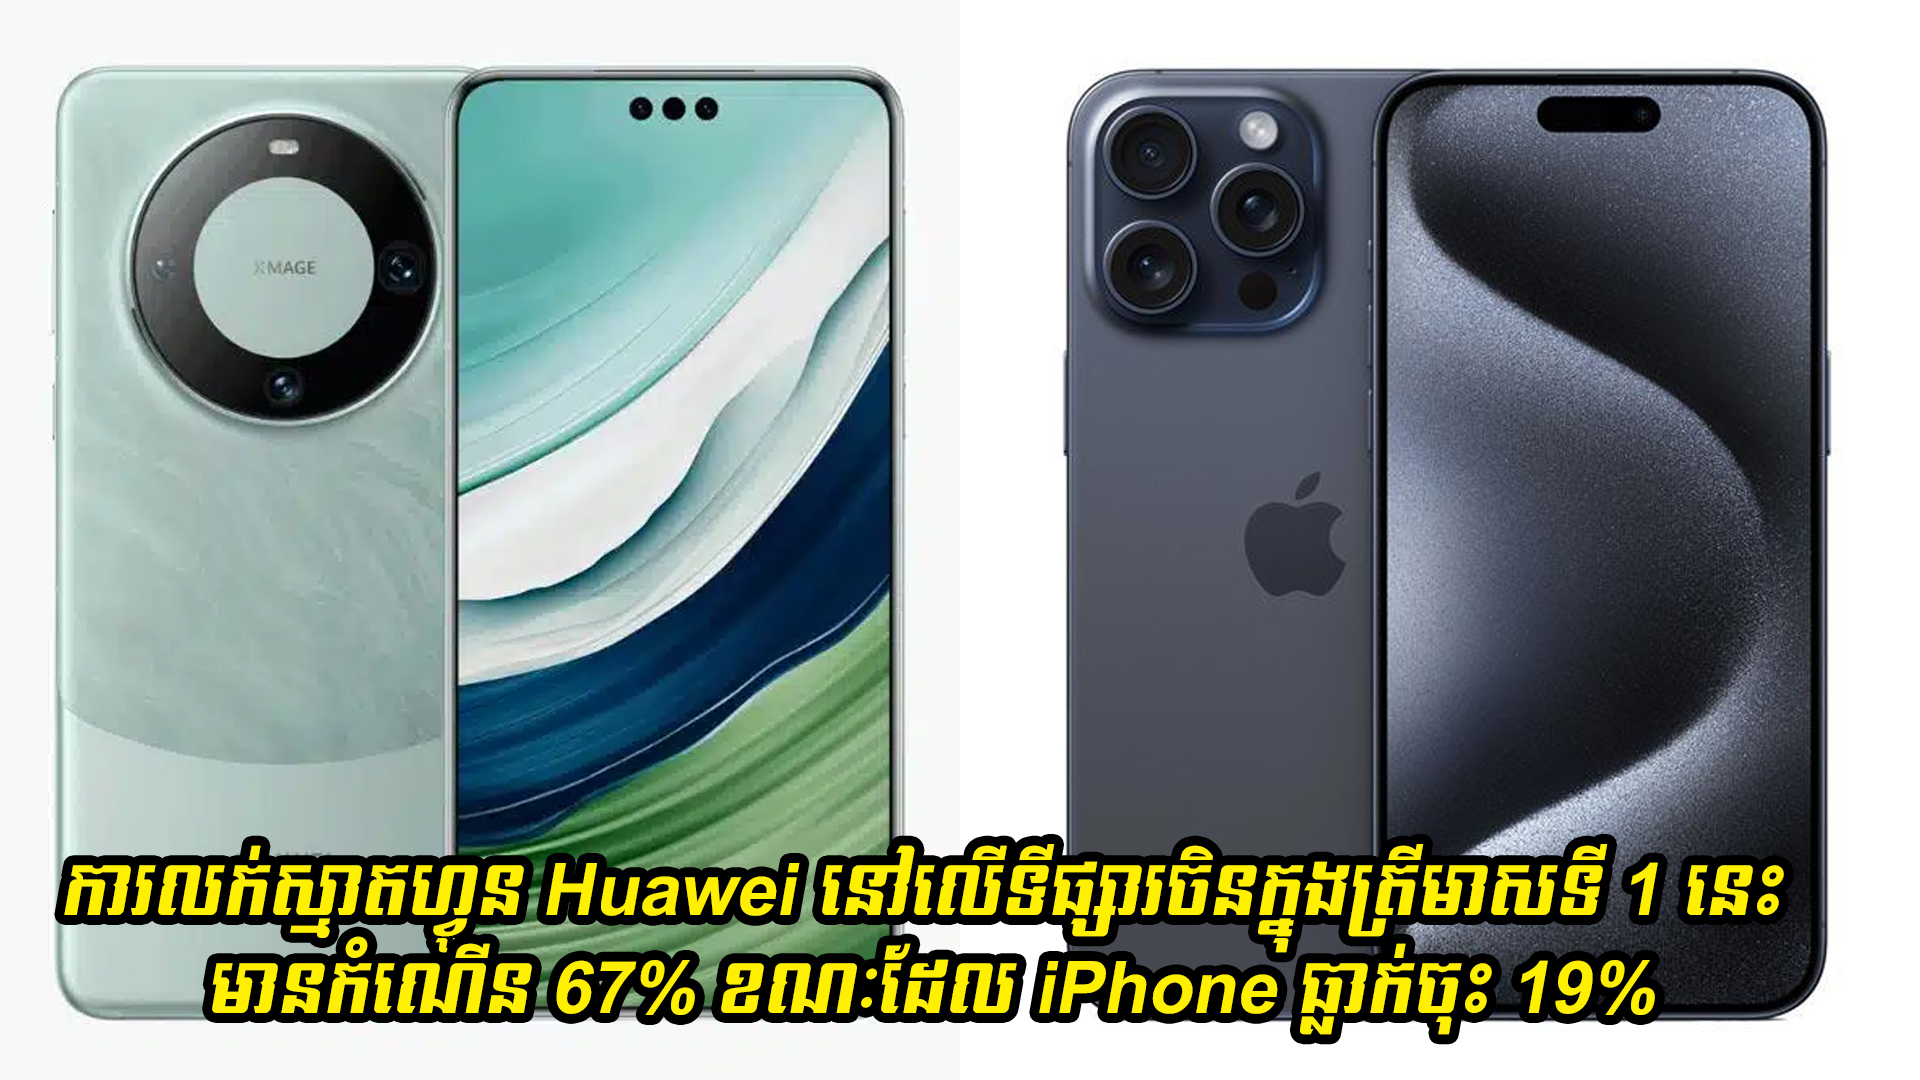 ការលក់ស្មាតហ្វូន Huawei នៅលើទីផ្សារចិនក្នុងត្រីមាសទី 1 នេះ មានកំណើន 67% ខណៈដែល iPhone ធ្លាក់ចុះ 19% 